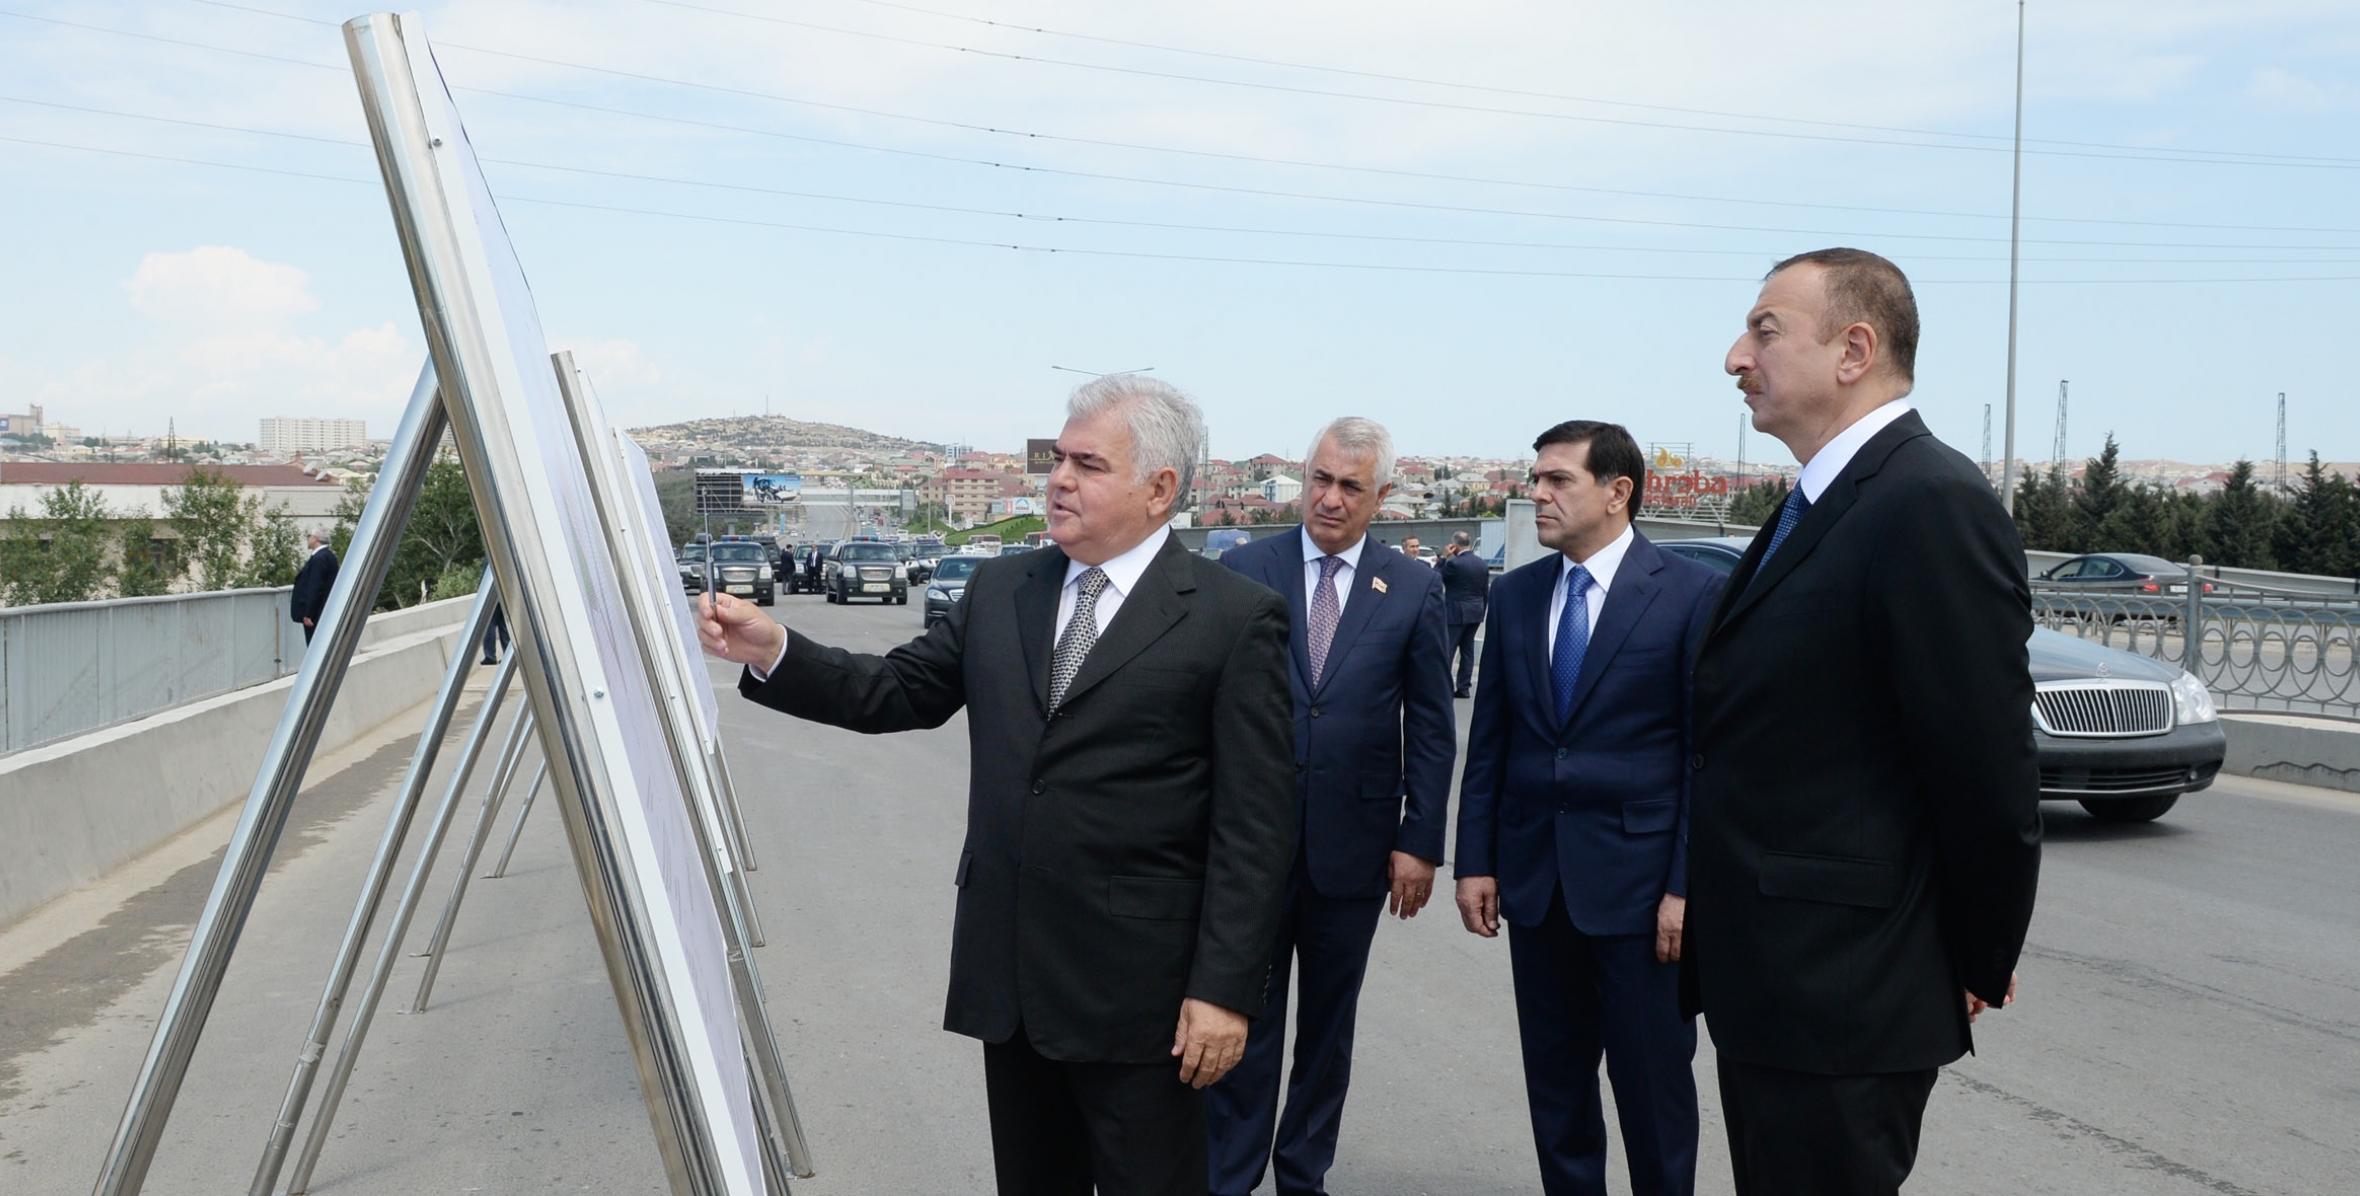 İlham Əliyev əsaslı şəkildə yenidən qurulmuş Tağıyev-Sahil avtomobil yolunun açılışında iştirak etmişdir